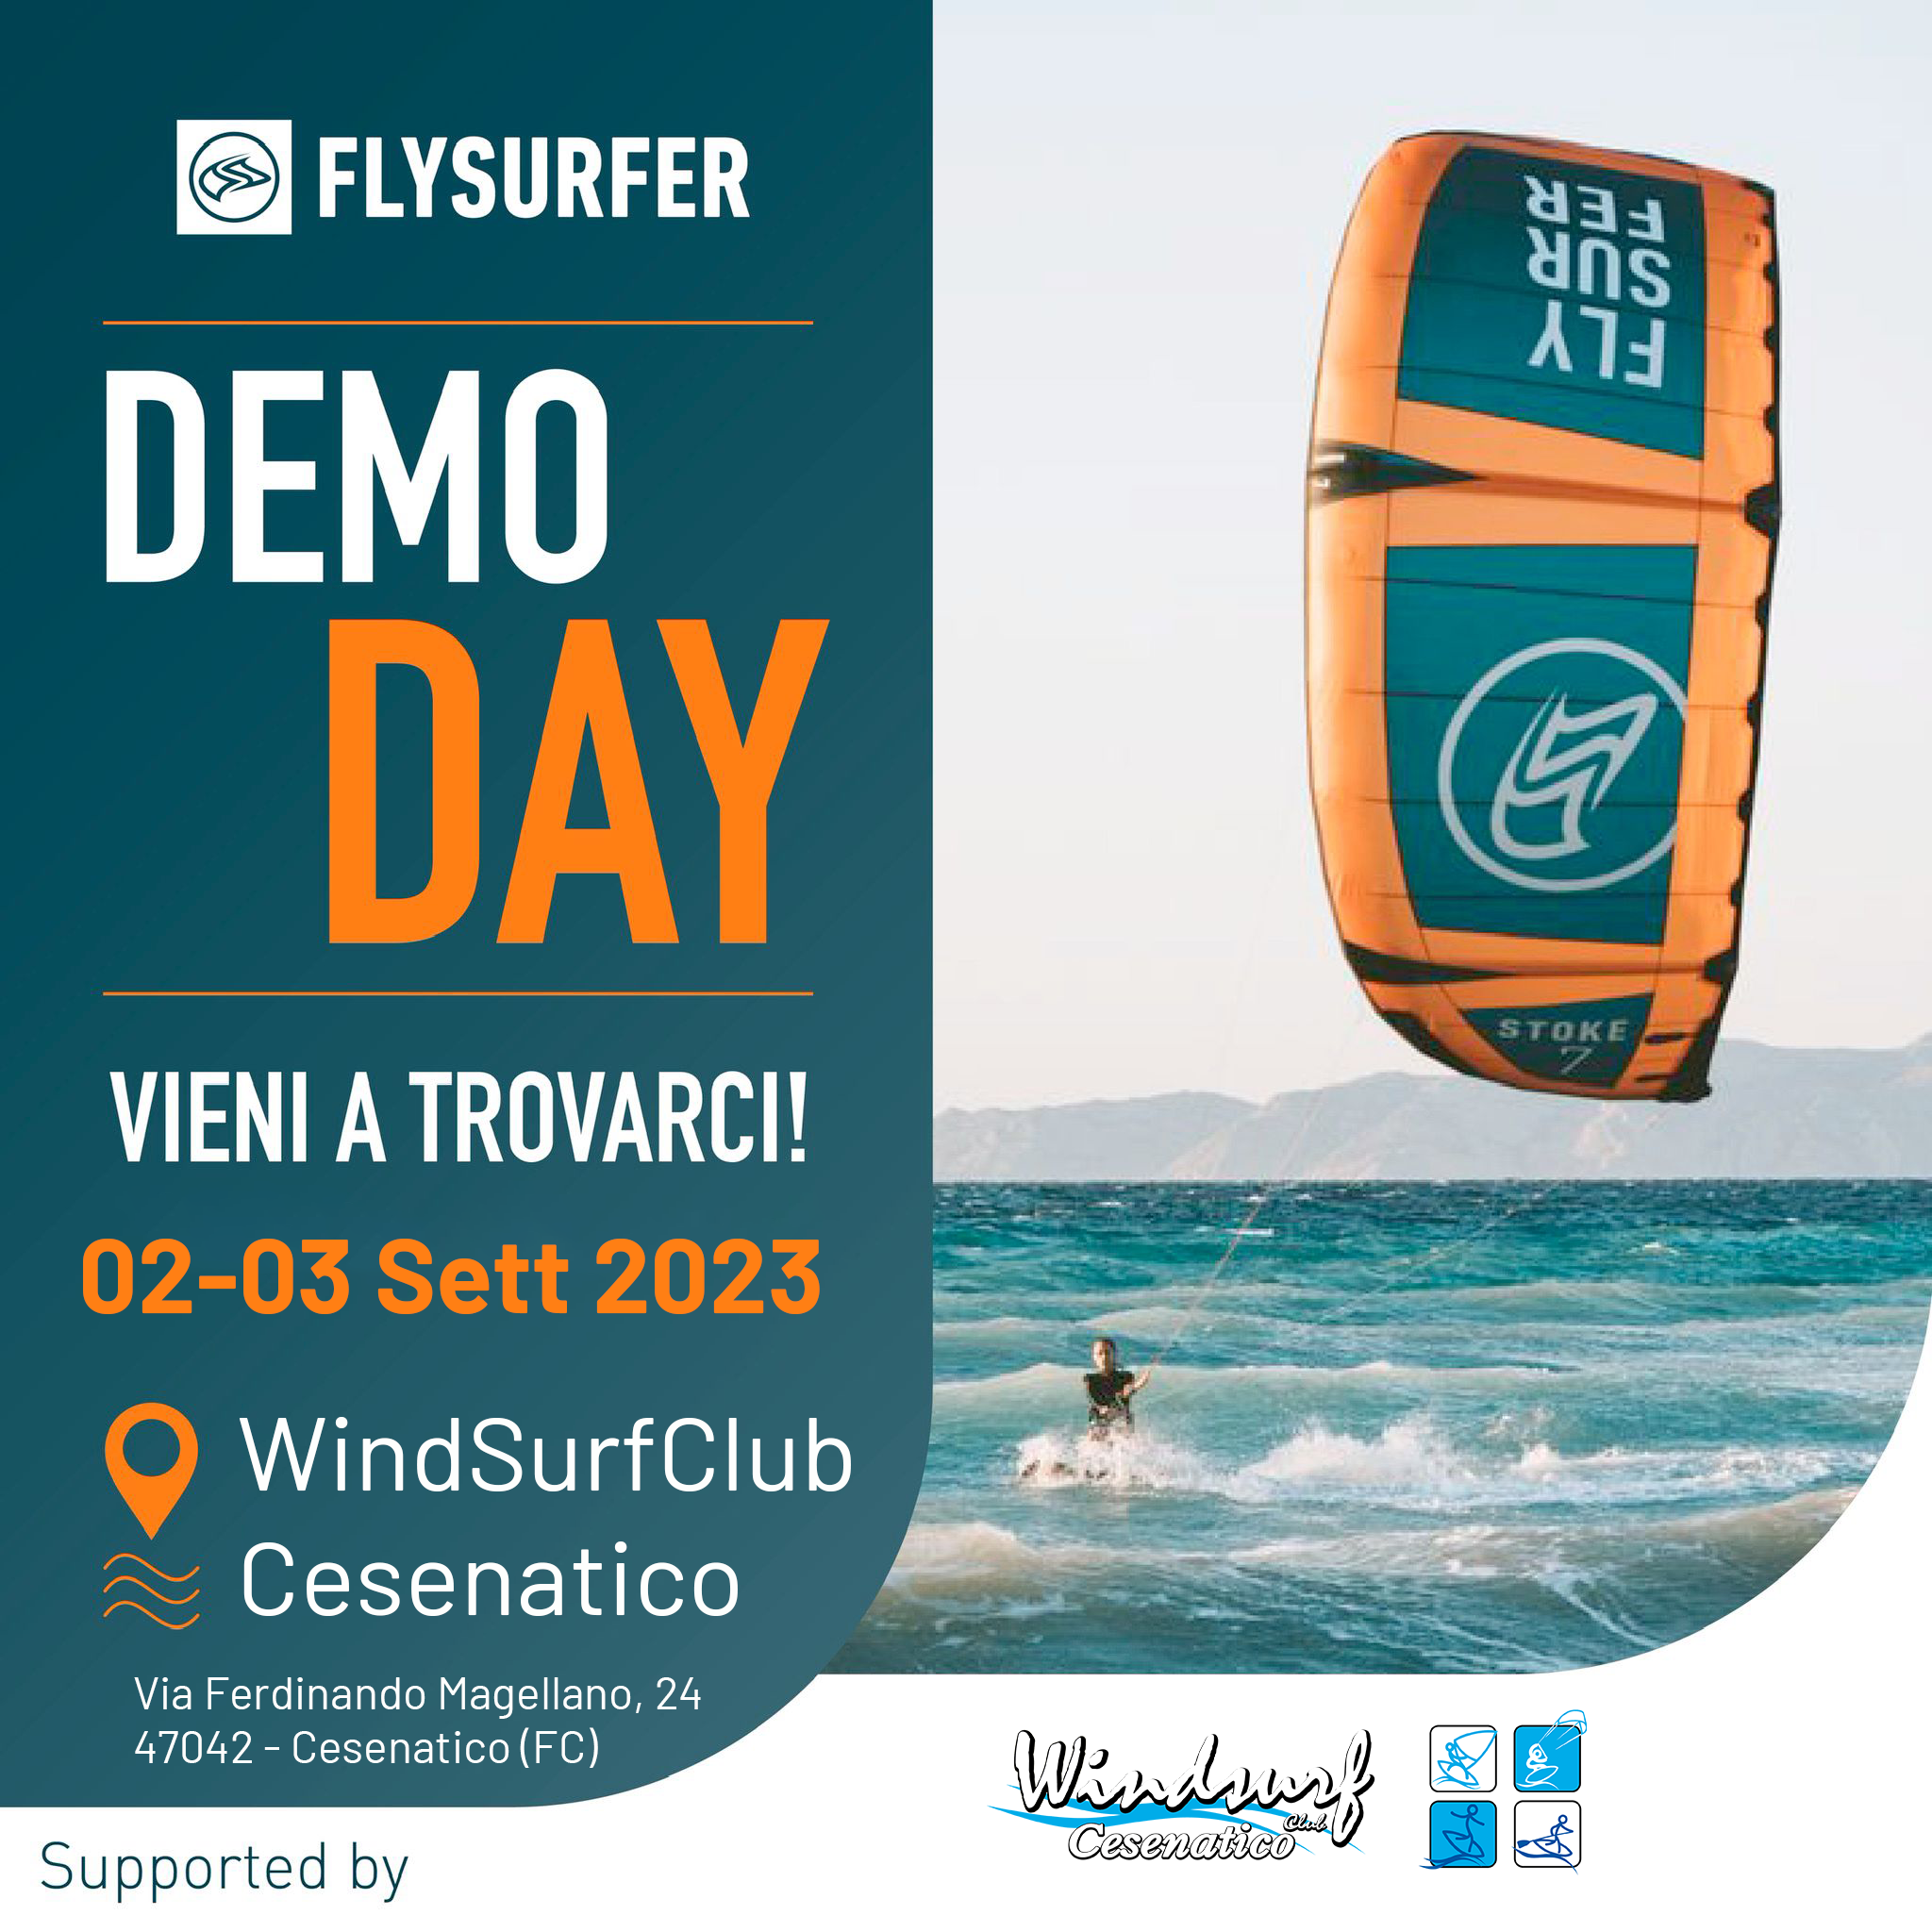 DEMO DAY Flysurfer